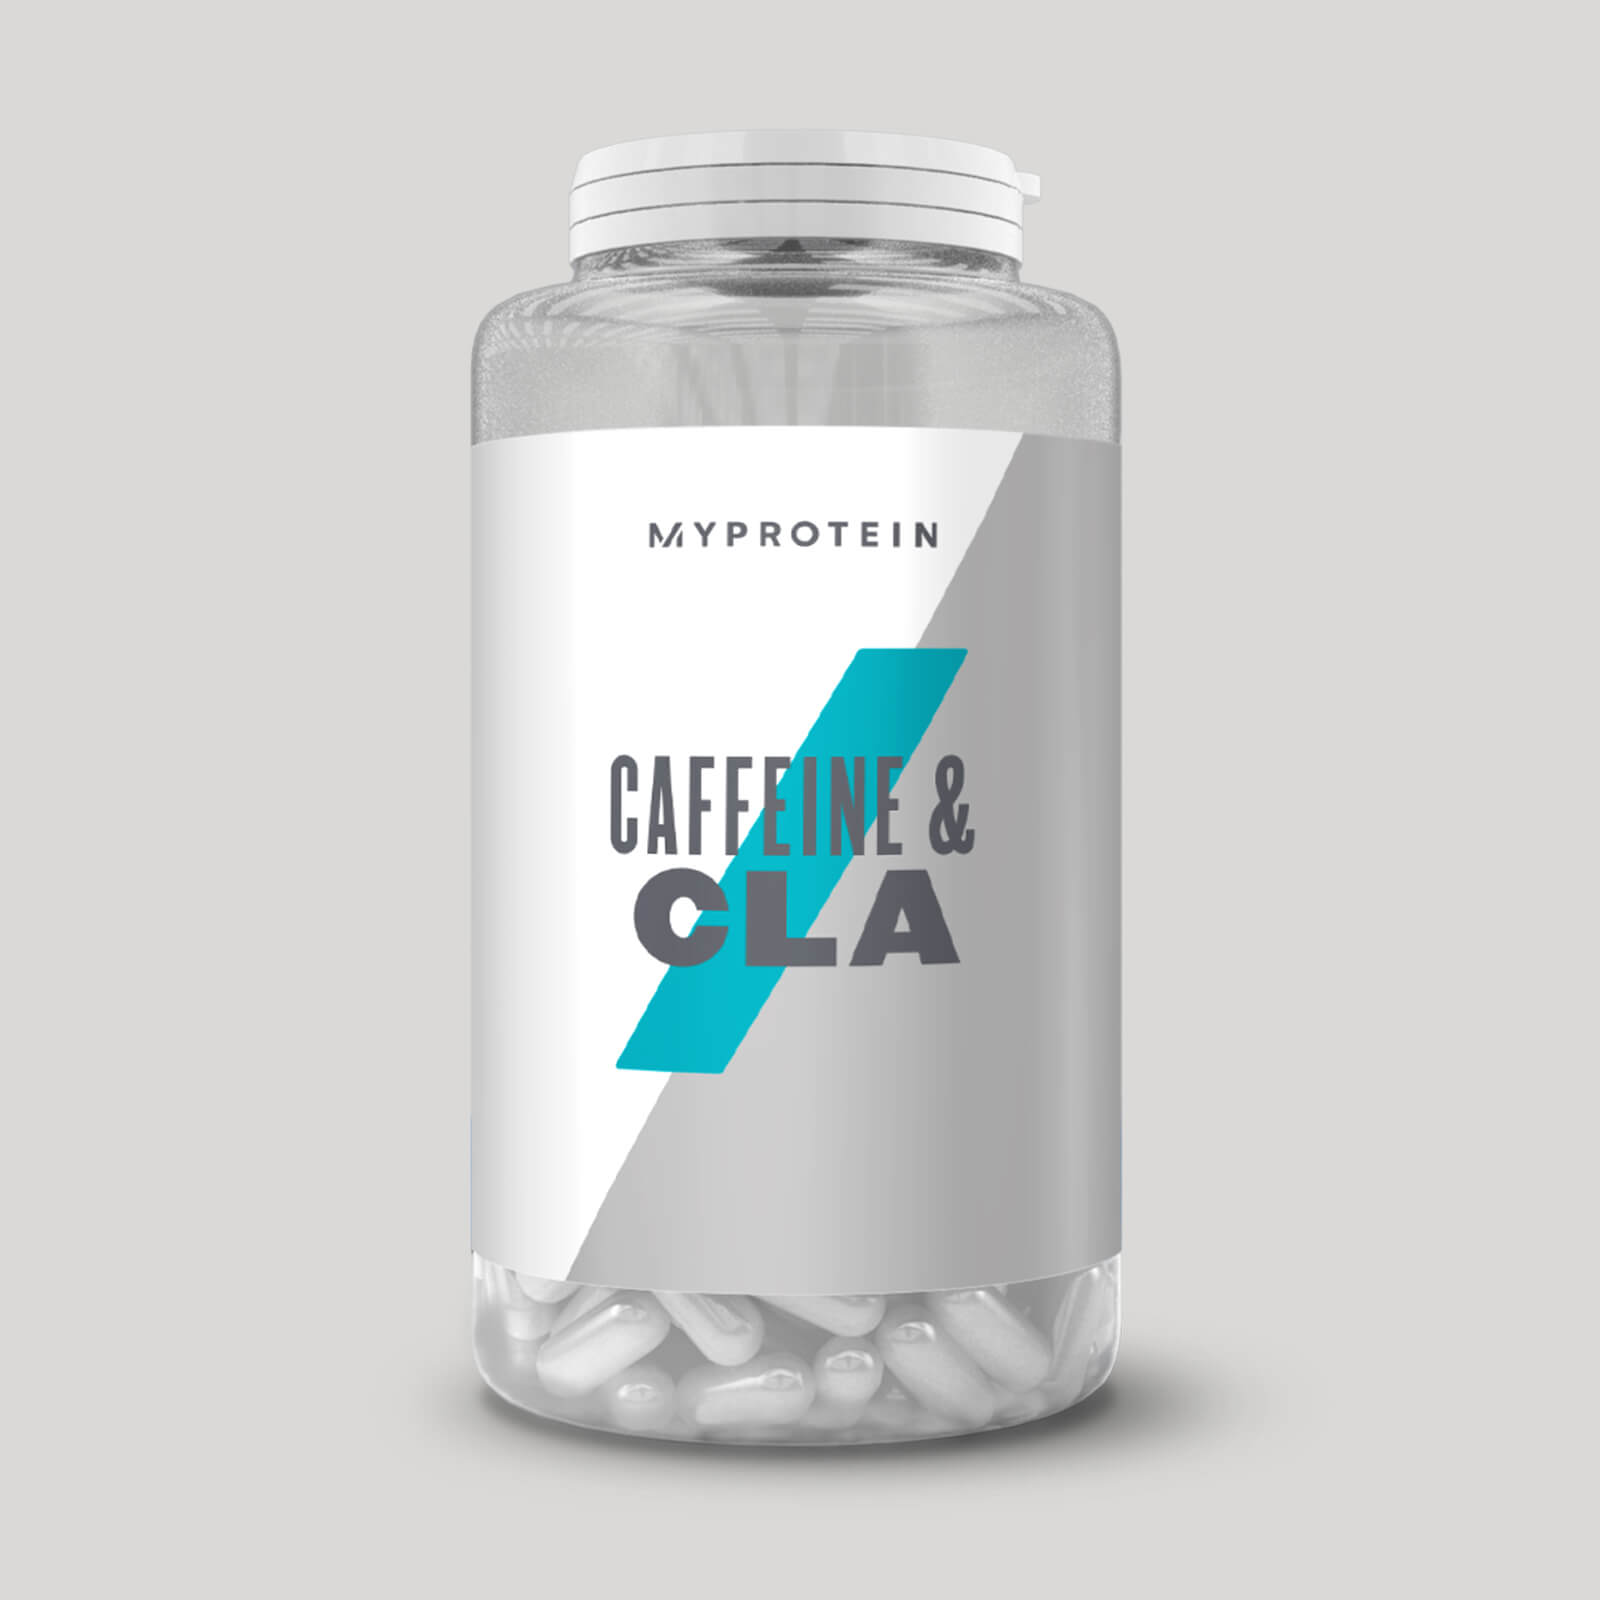 Caffeine & CLA Capsules